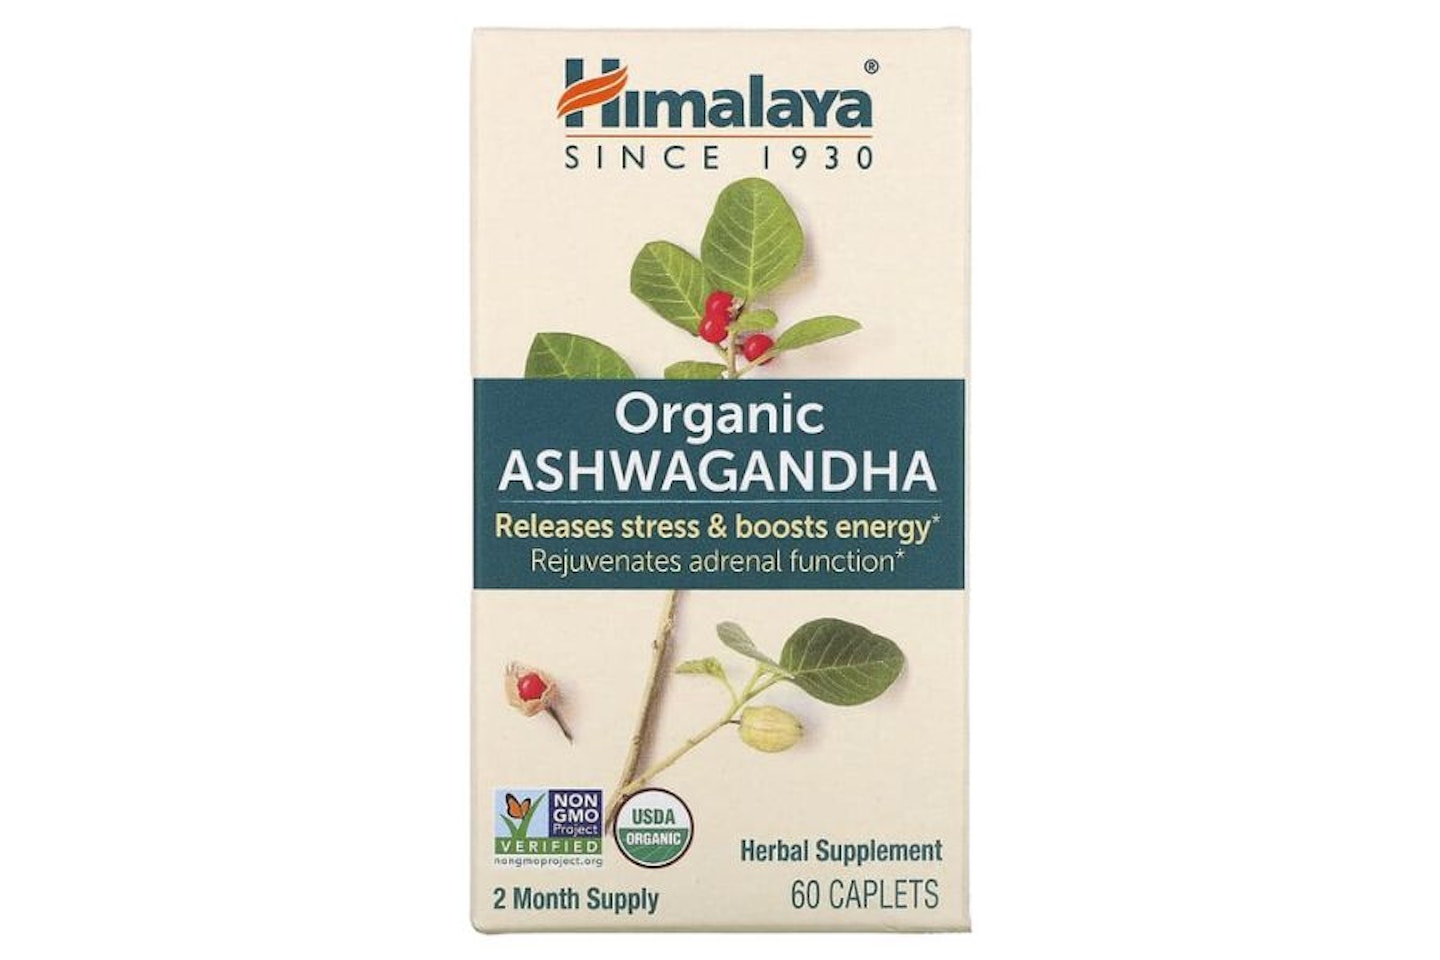 Himalaya Organic Ashwagandha - best one-a-day ashwagandha 